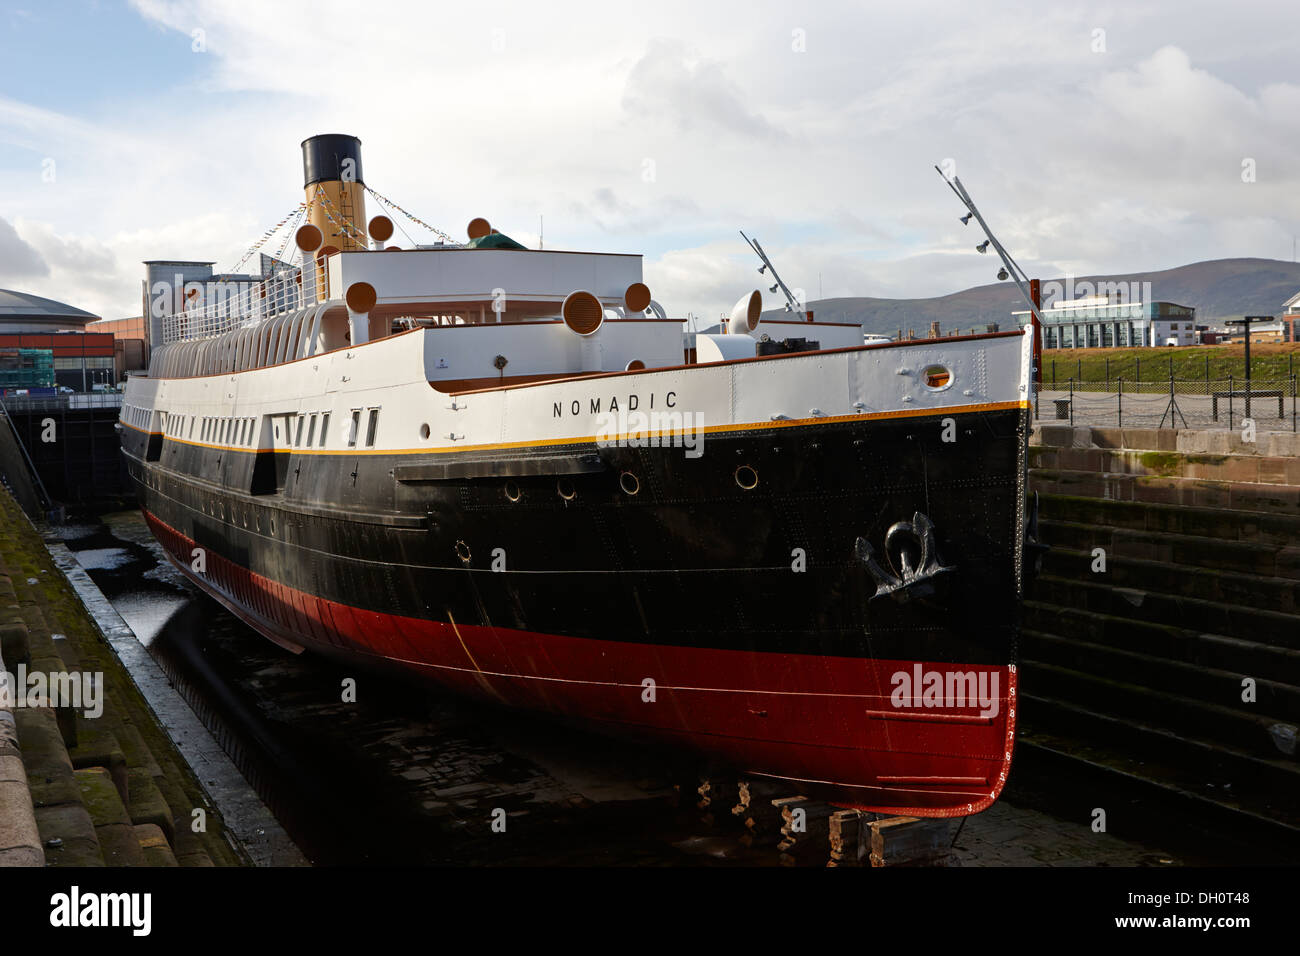 Ss nomadic une attraction touristique à l'Irlande du Nord Belfast Titanic Quarter Banque D'Images